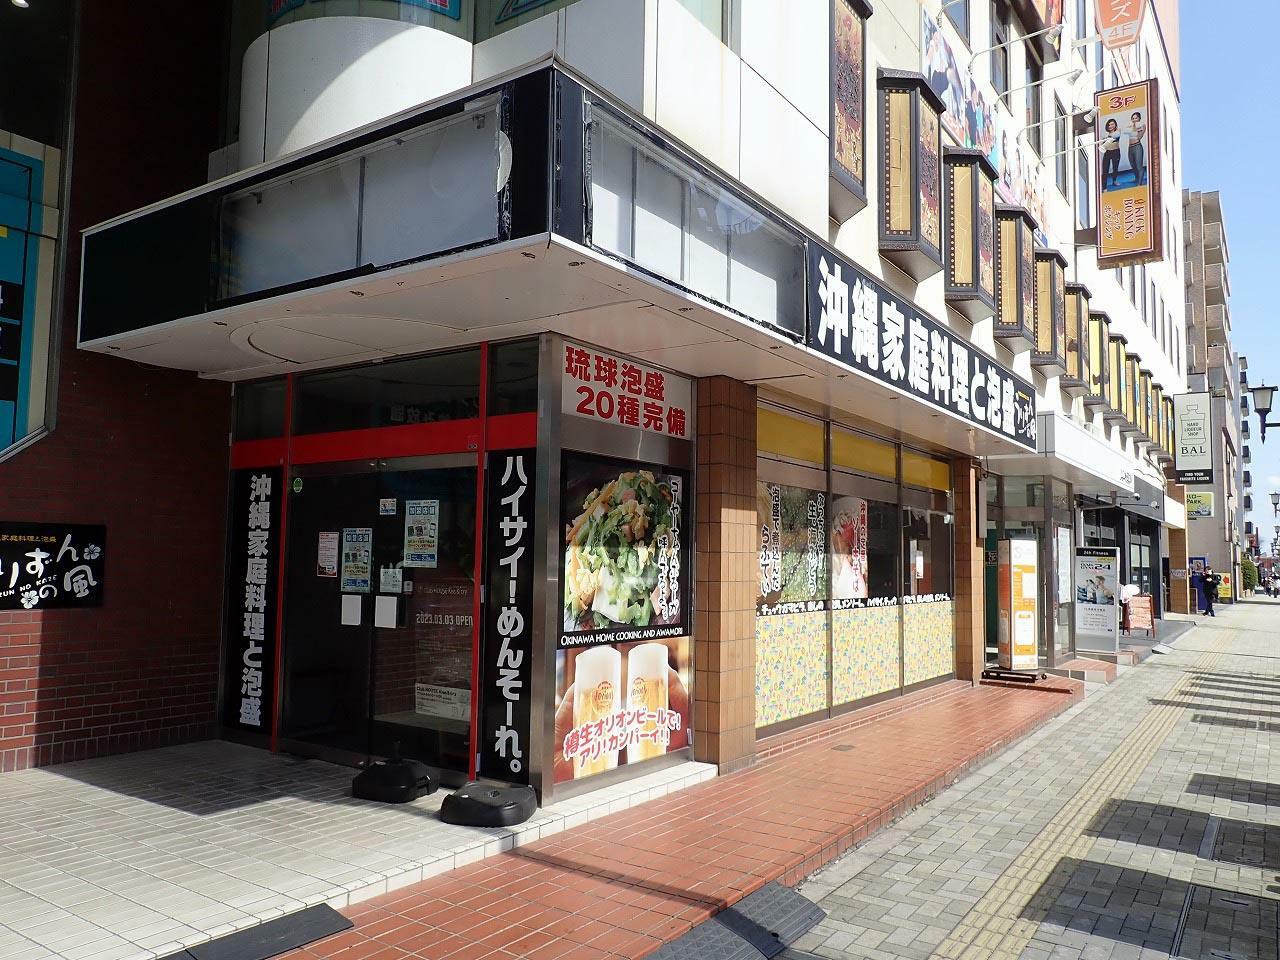 お店は本川越駅から徒歩約4分のところにありました